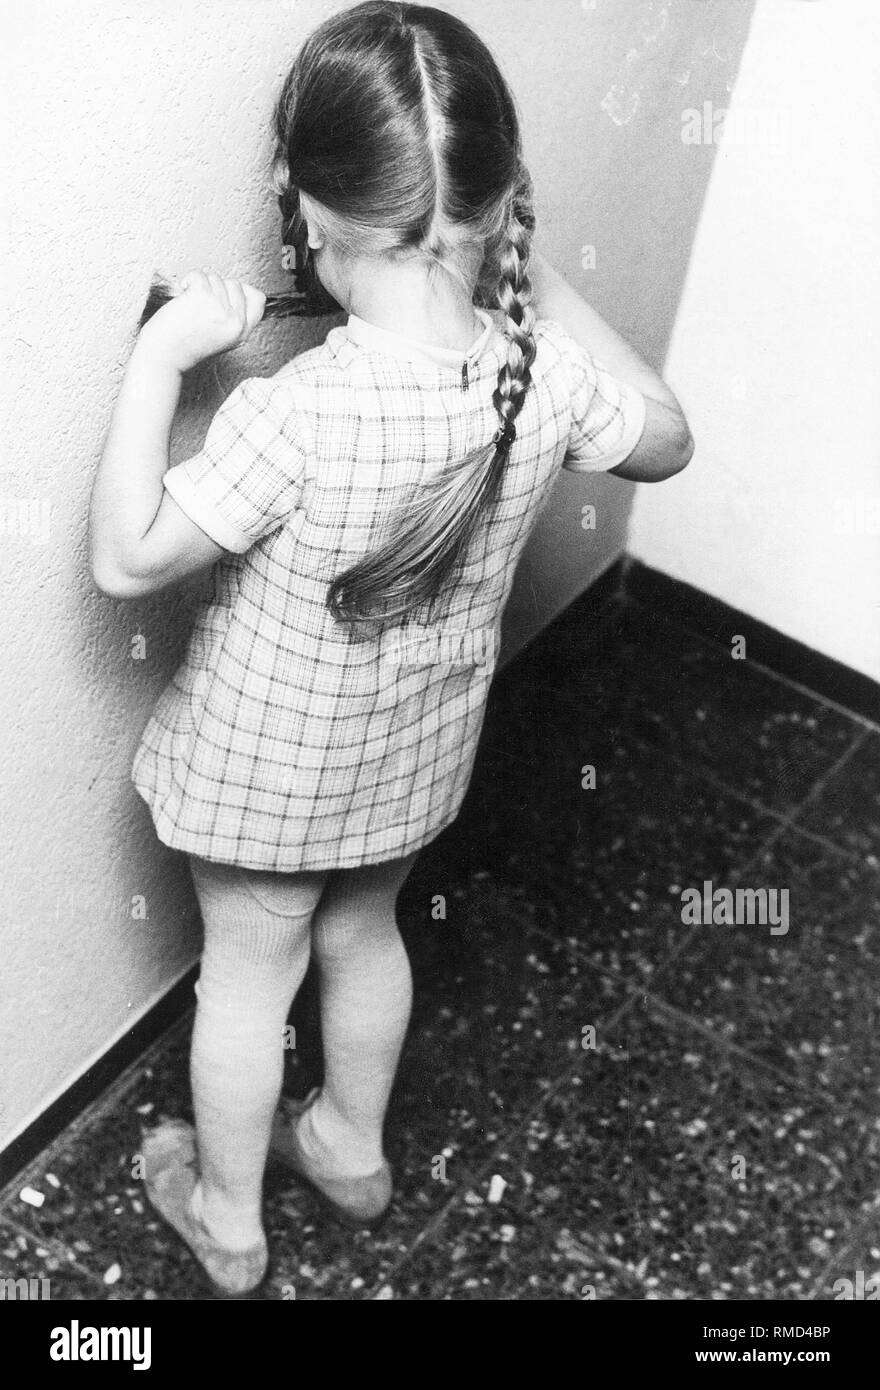 Ein kleines Mädchen hat in der Ecke des Klassenzimmers zu stehen als Strafe (inszenierte Szene). Stockfoto